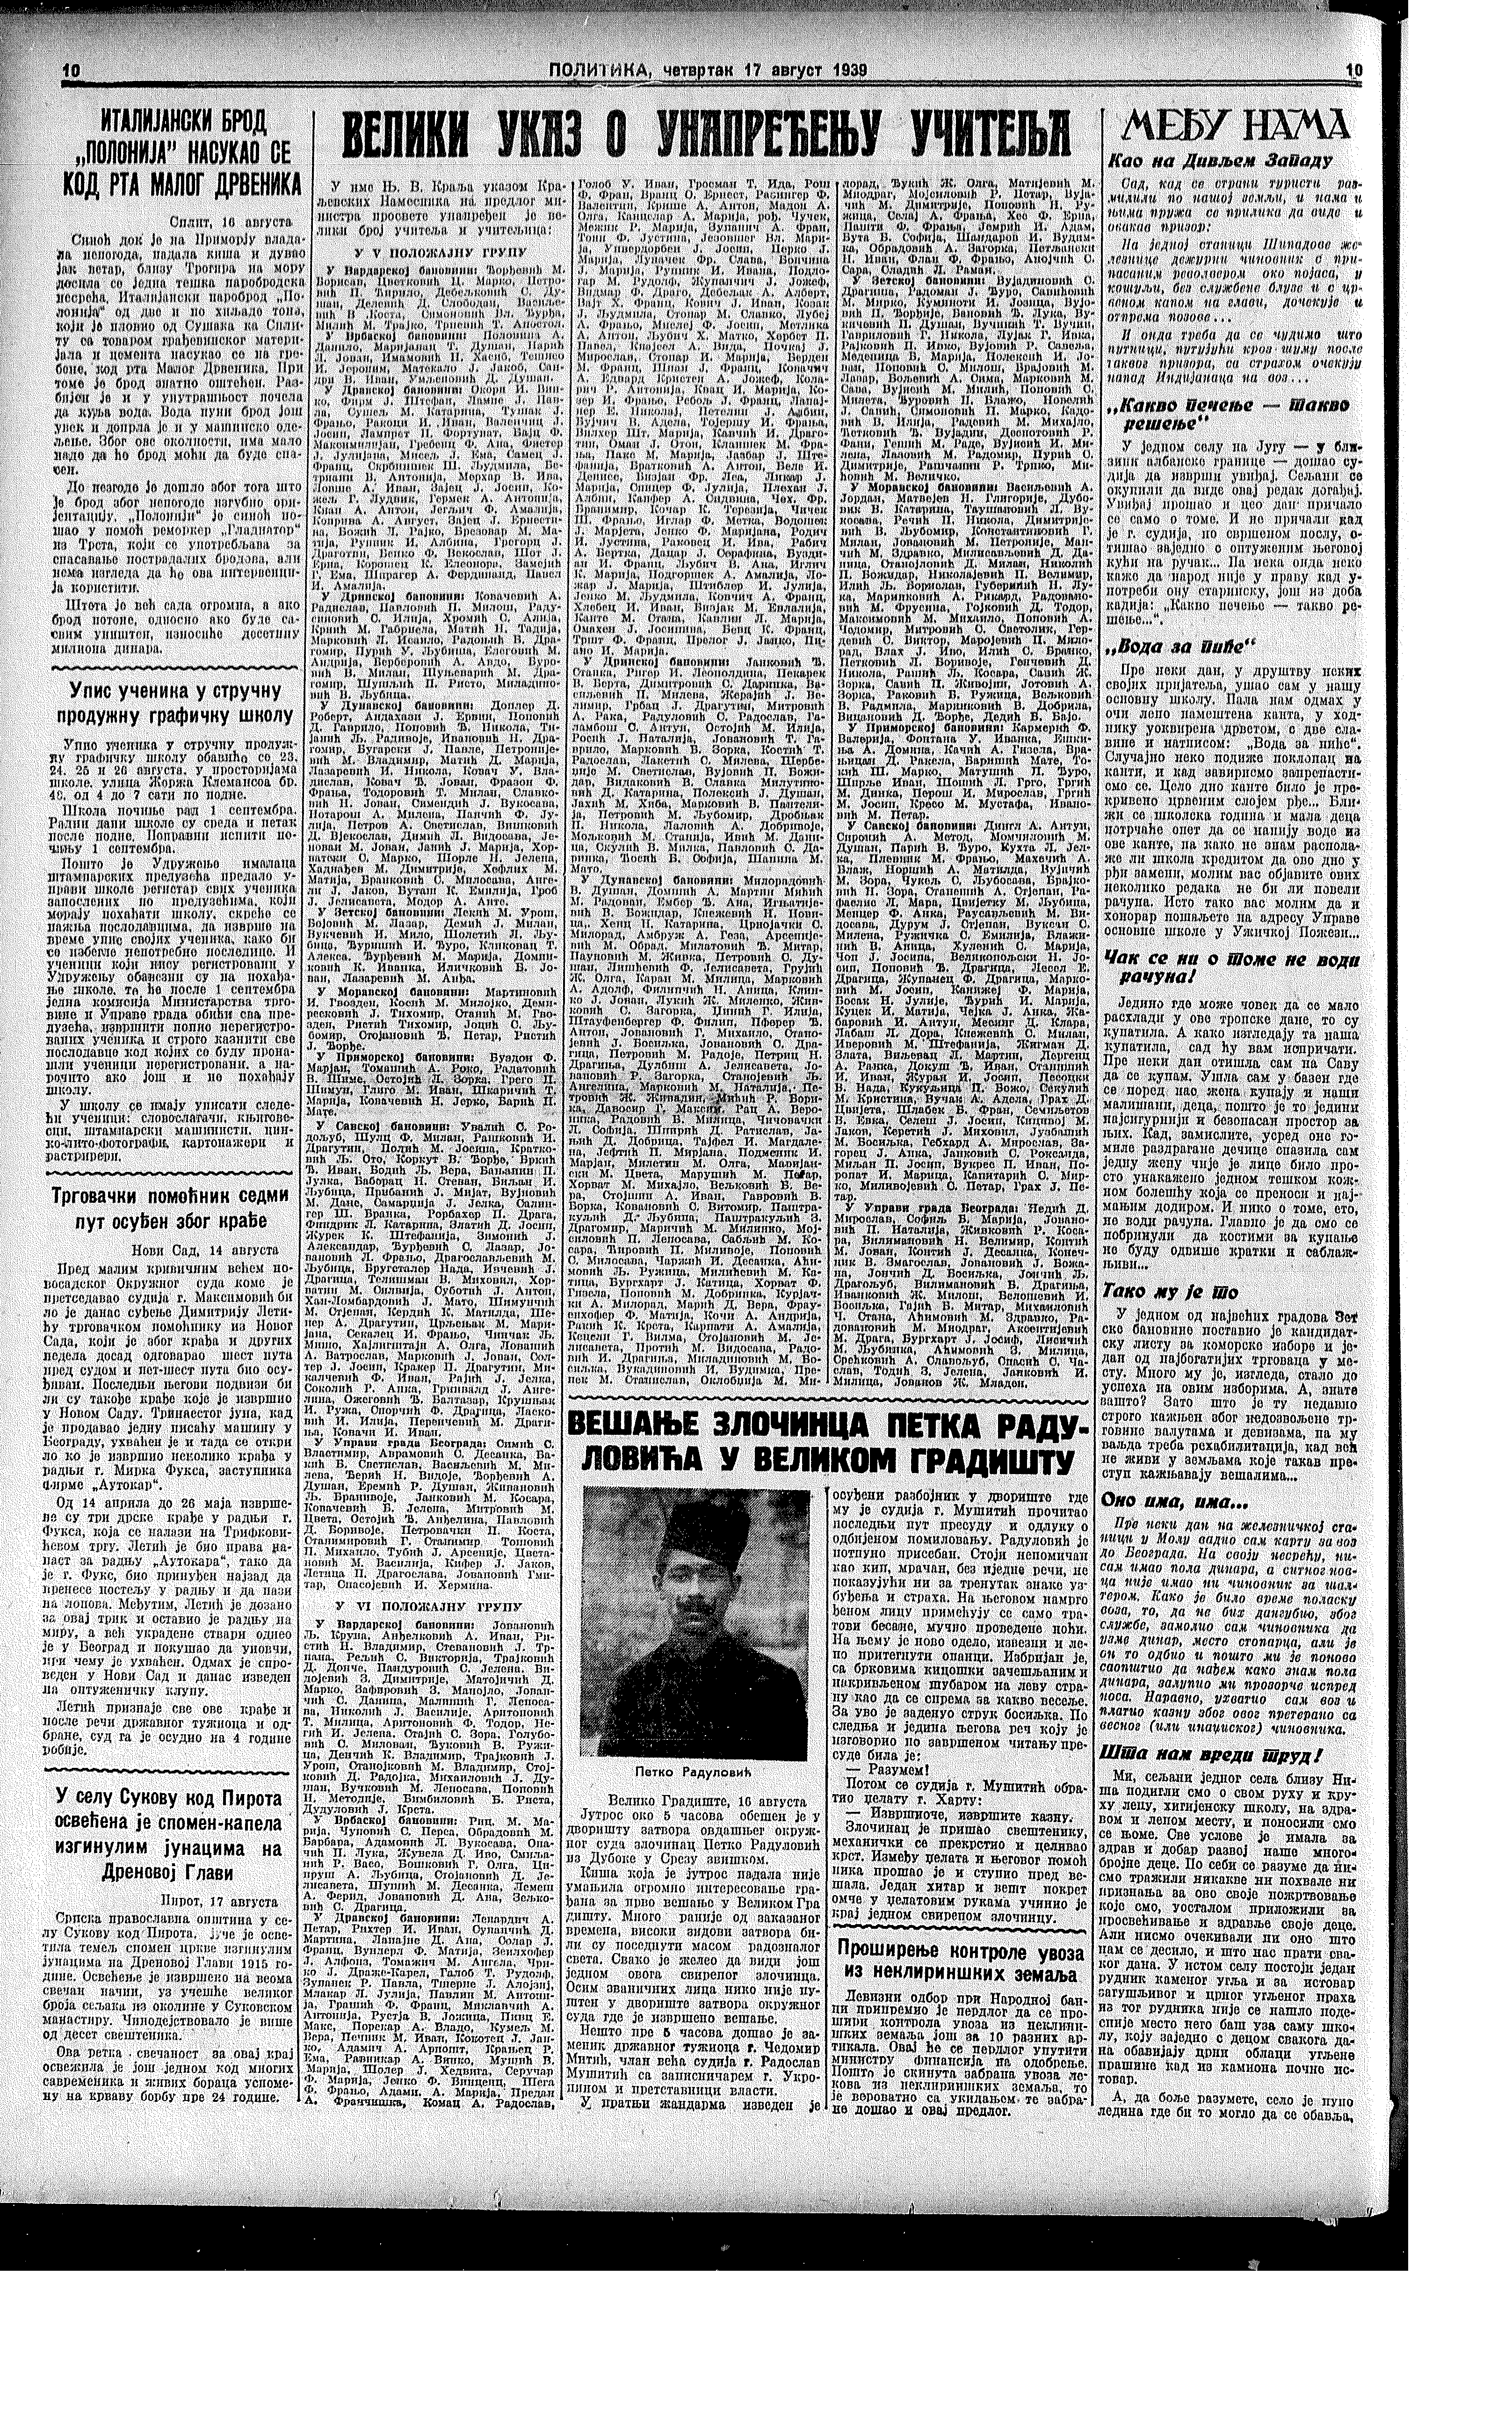 Vešanje zločinca, Politika, 17.08.1939.